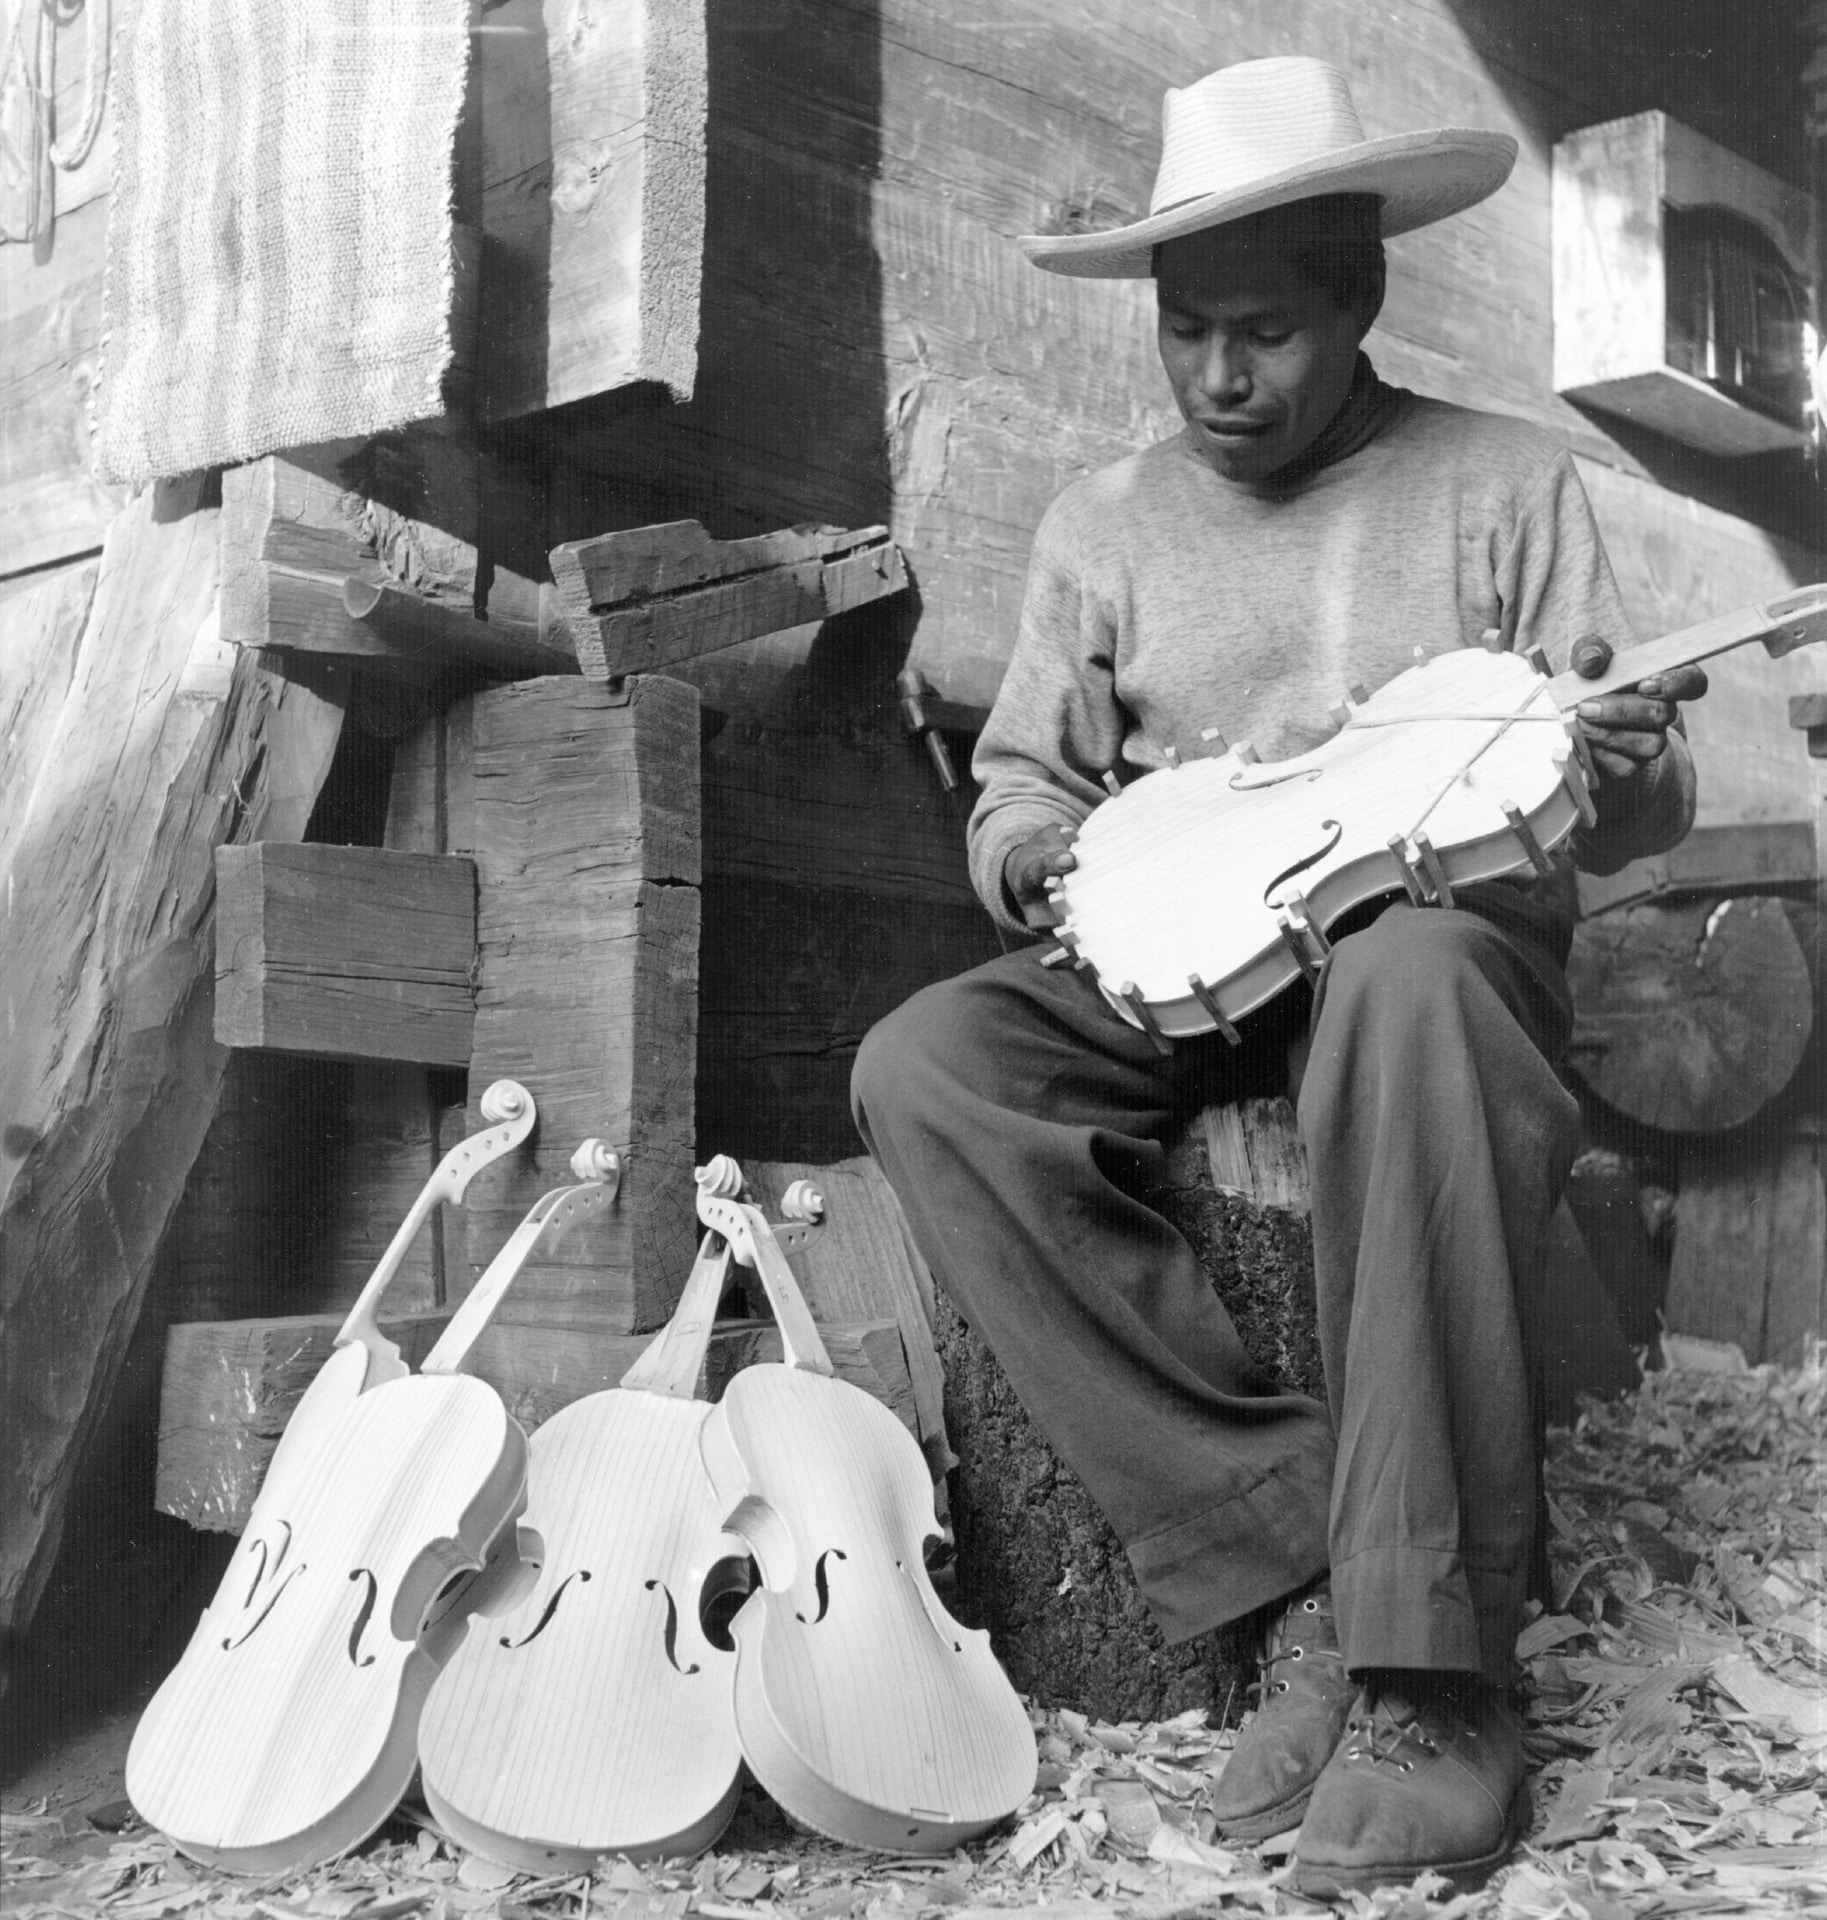 1952: un liutaio messicano mostra alcuni violini ancora in fase di costruzione.